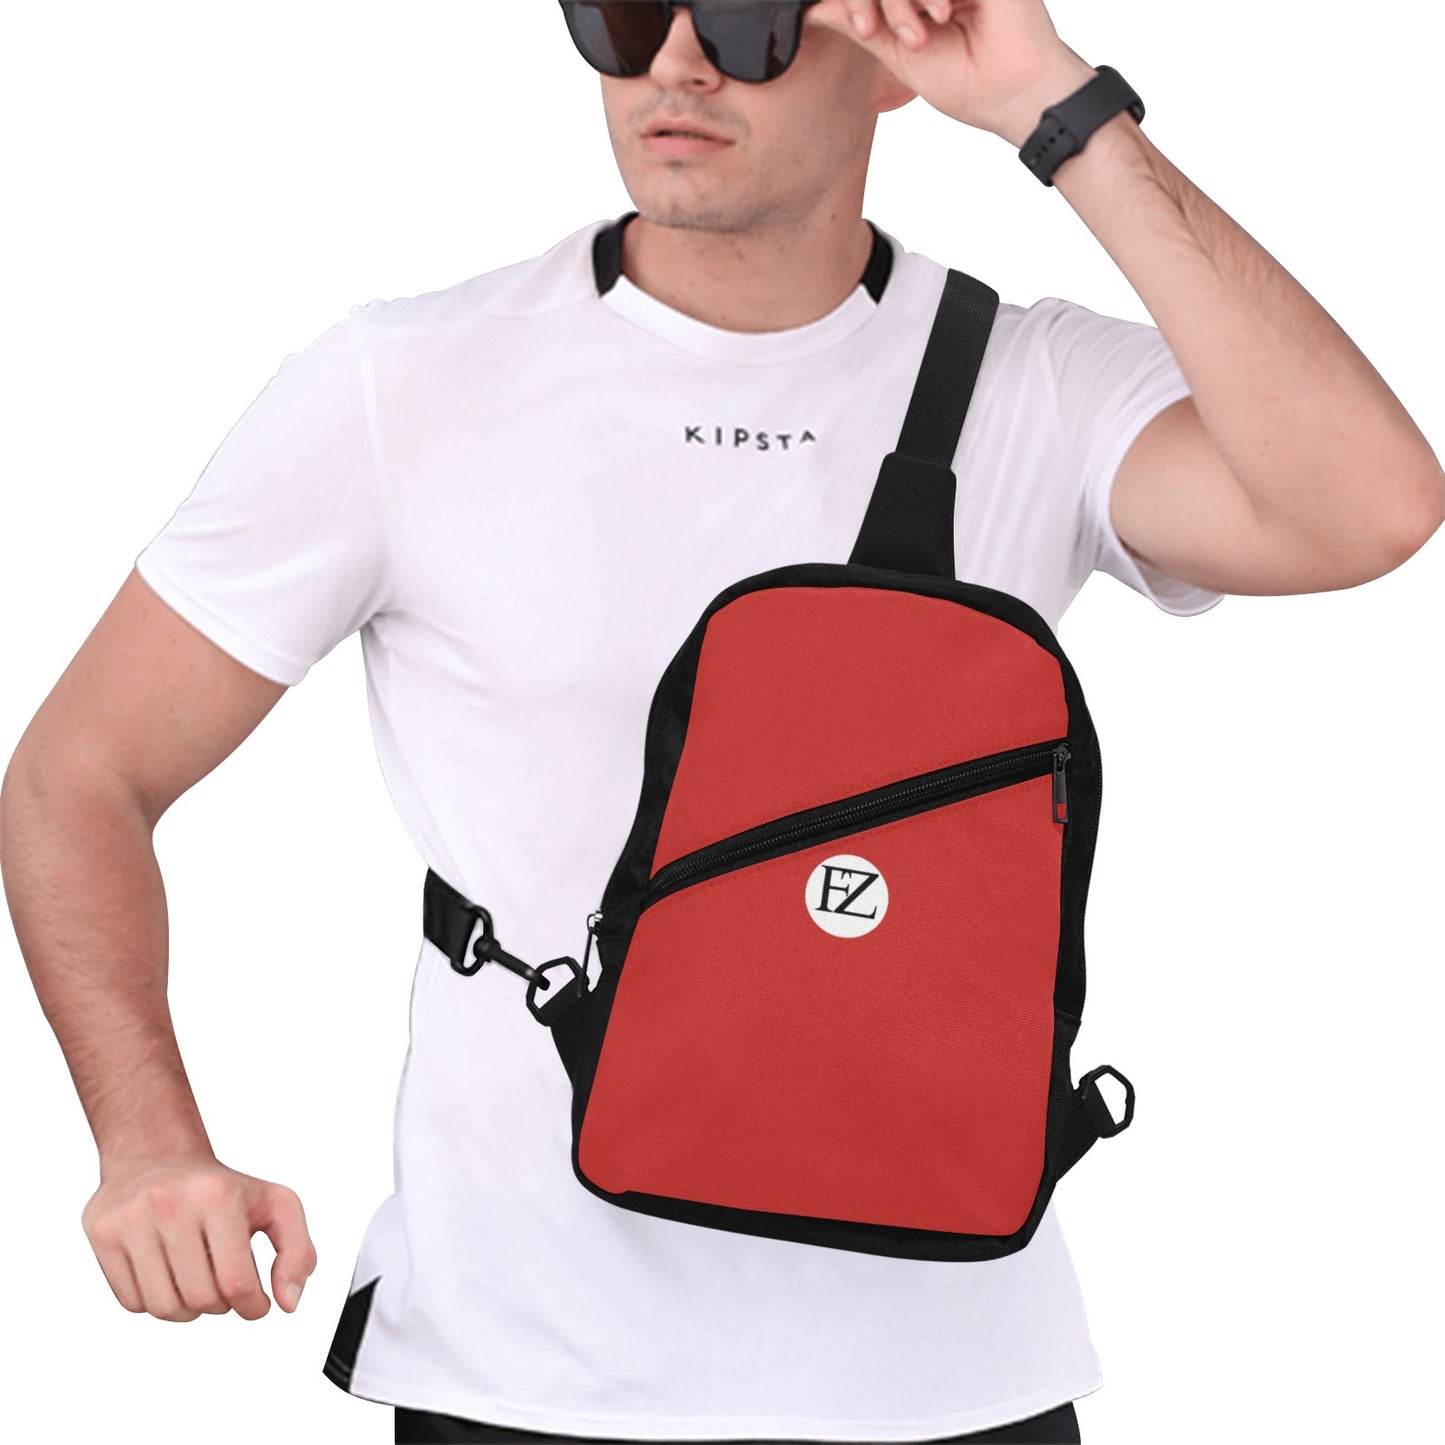 fz men's chest bag one size / fz chest bag-red men's chest bag (model1726)